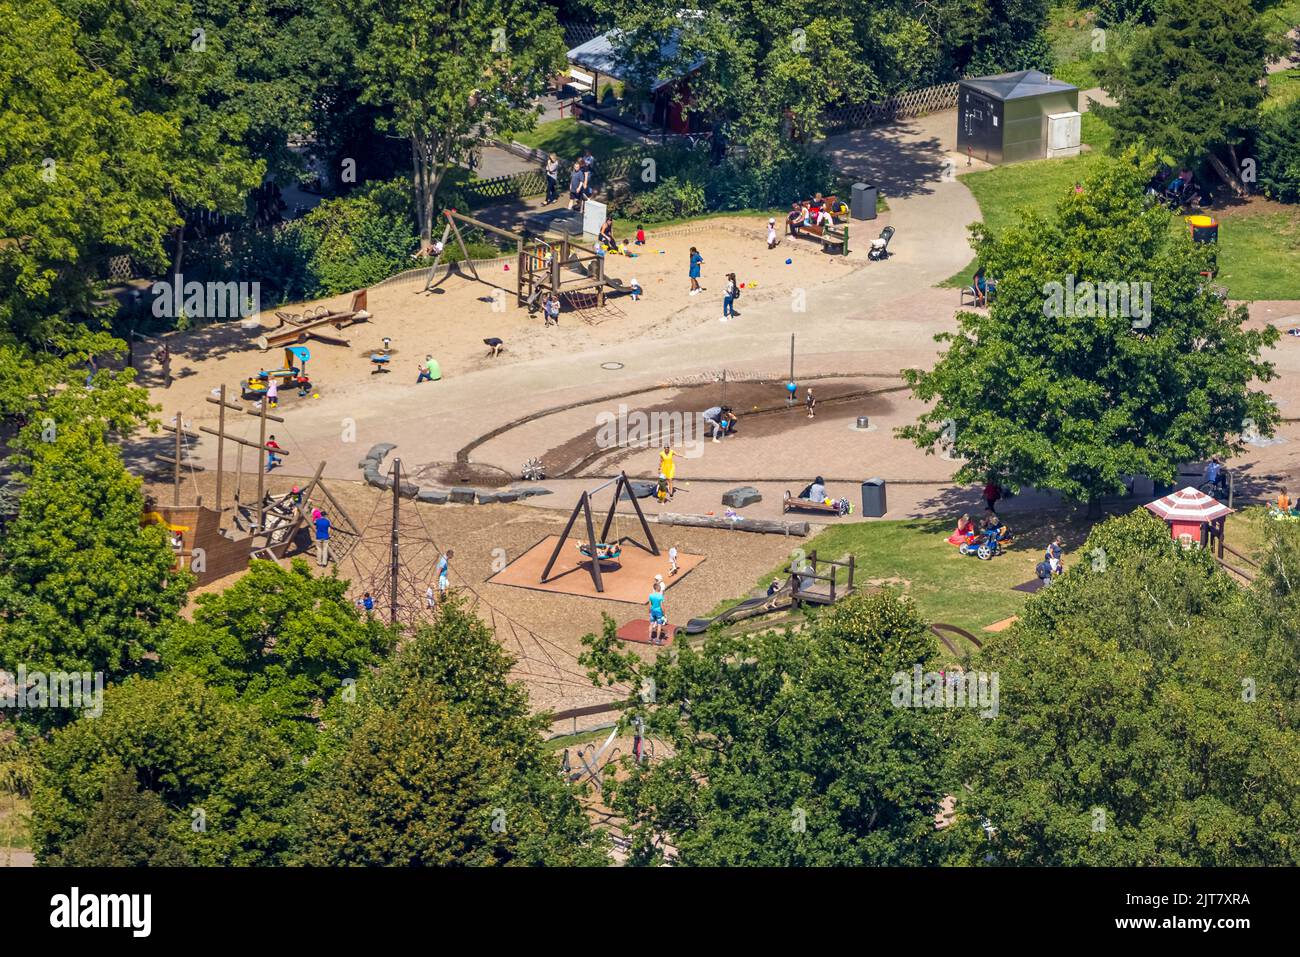 Vista aerea, parco giochi a Herminshauspark, Velbert, Ruhr, Renania settentrionale-Vestfalia, Germania, DE, Europa, parco giochi per bambini, fotografia aerea Foto Stock